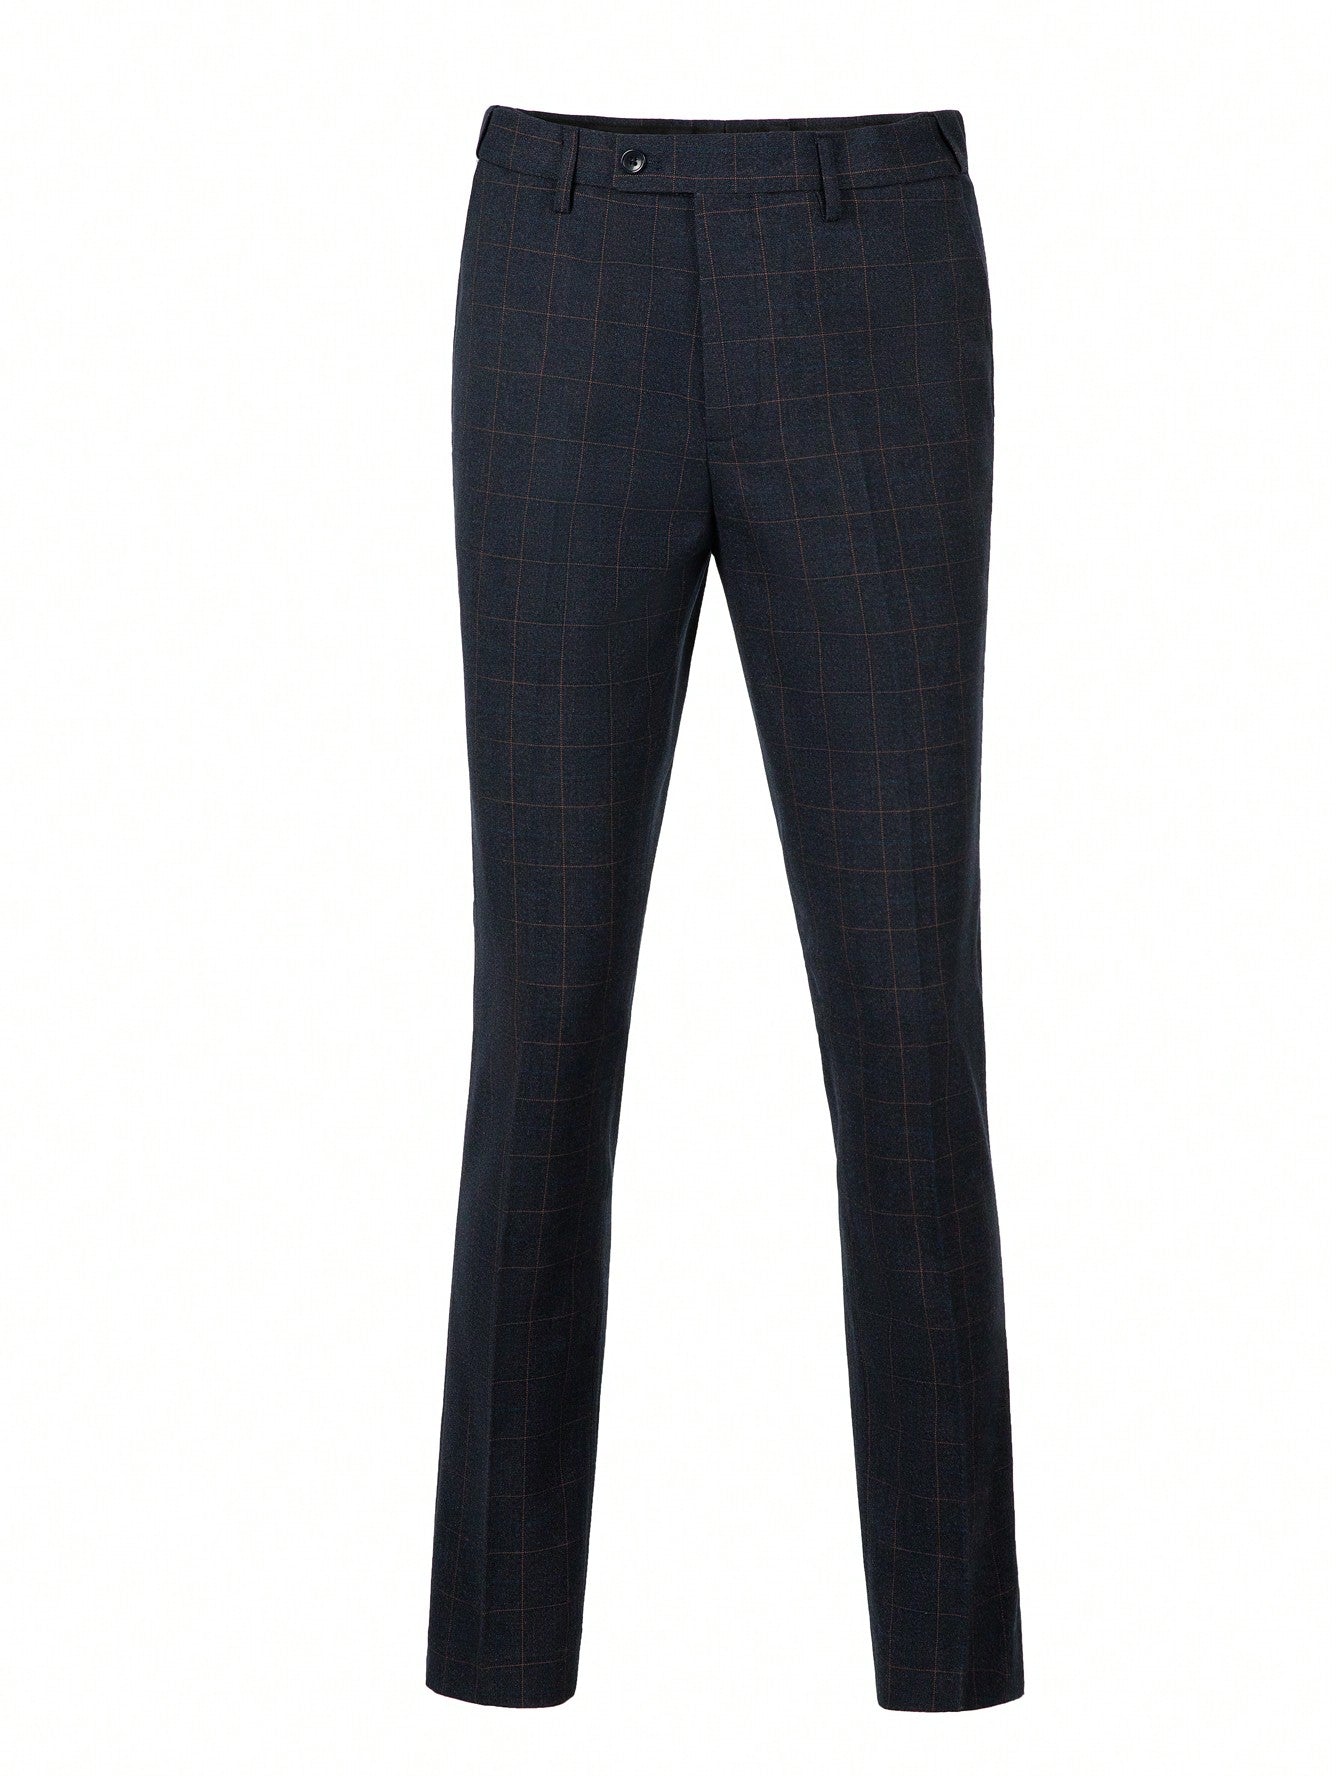 Men's Plaid Suit Three-Piece Set Including Jacket, Vest, And Pants